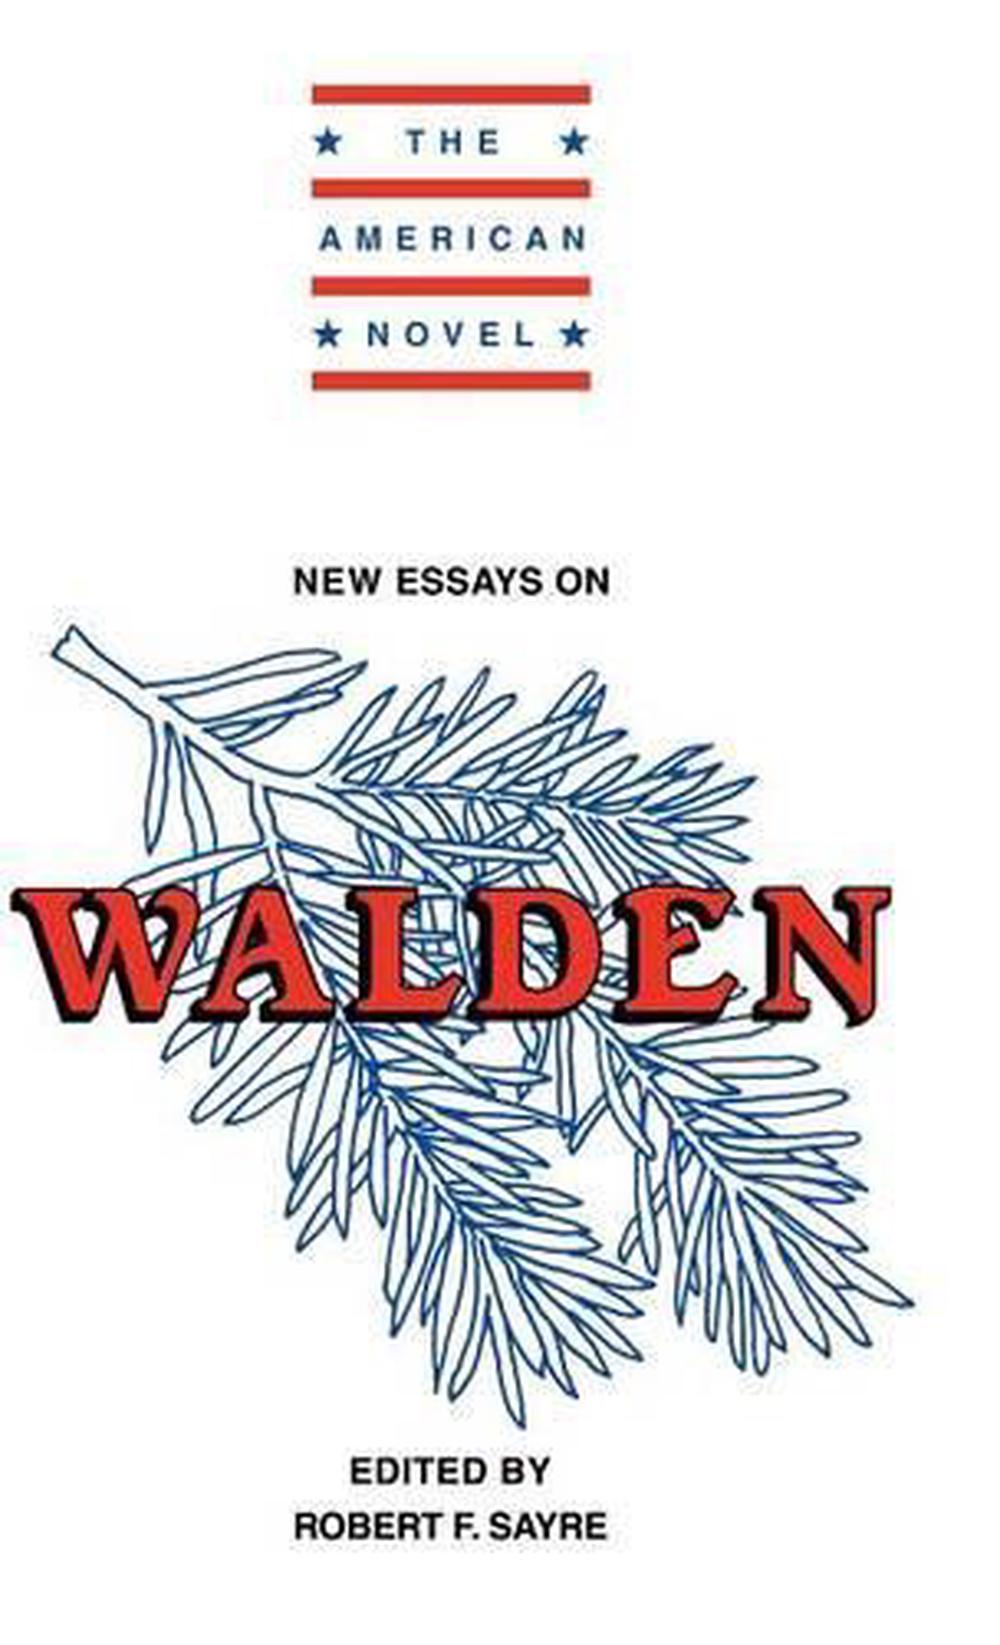 Walden essays